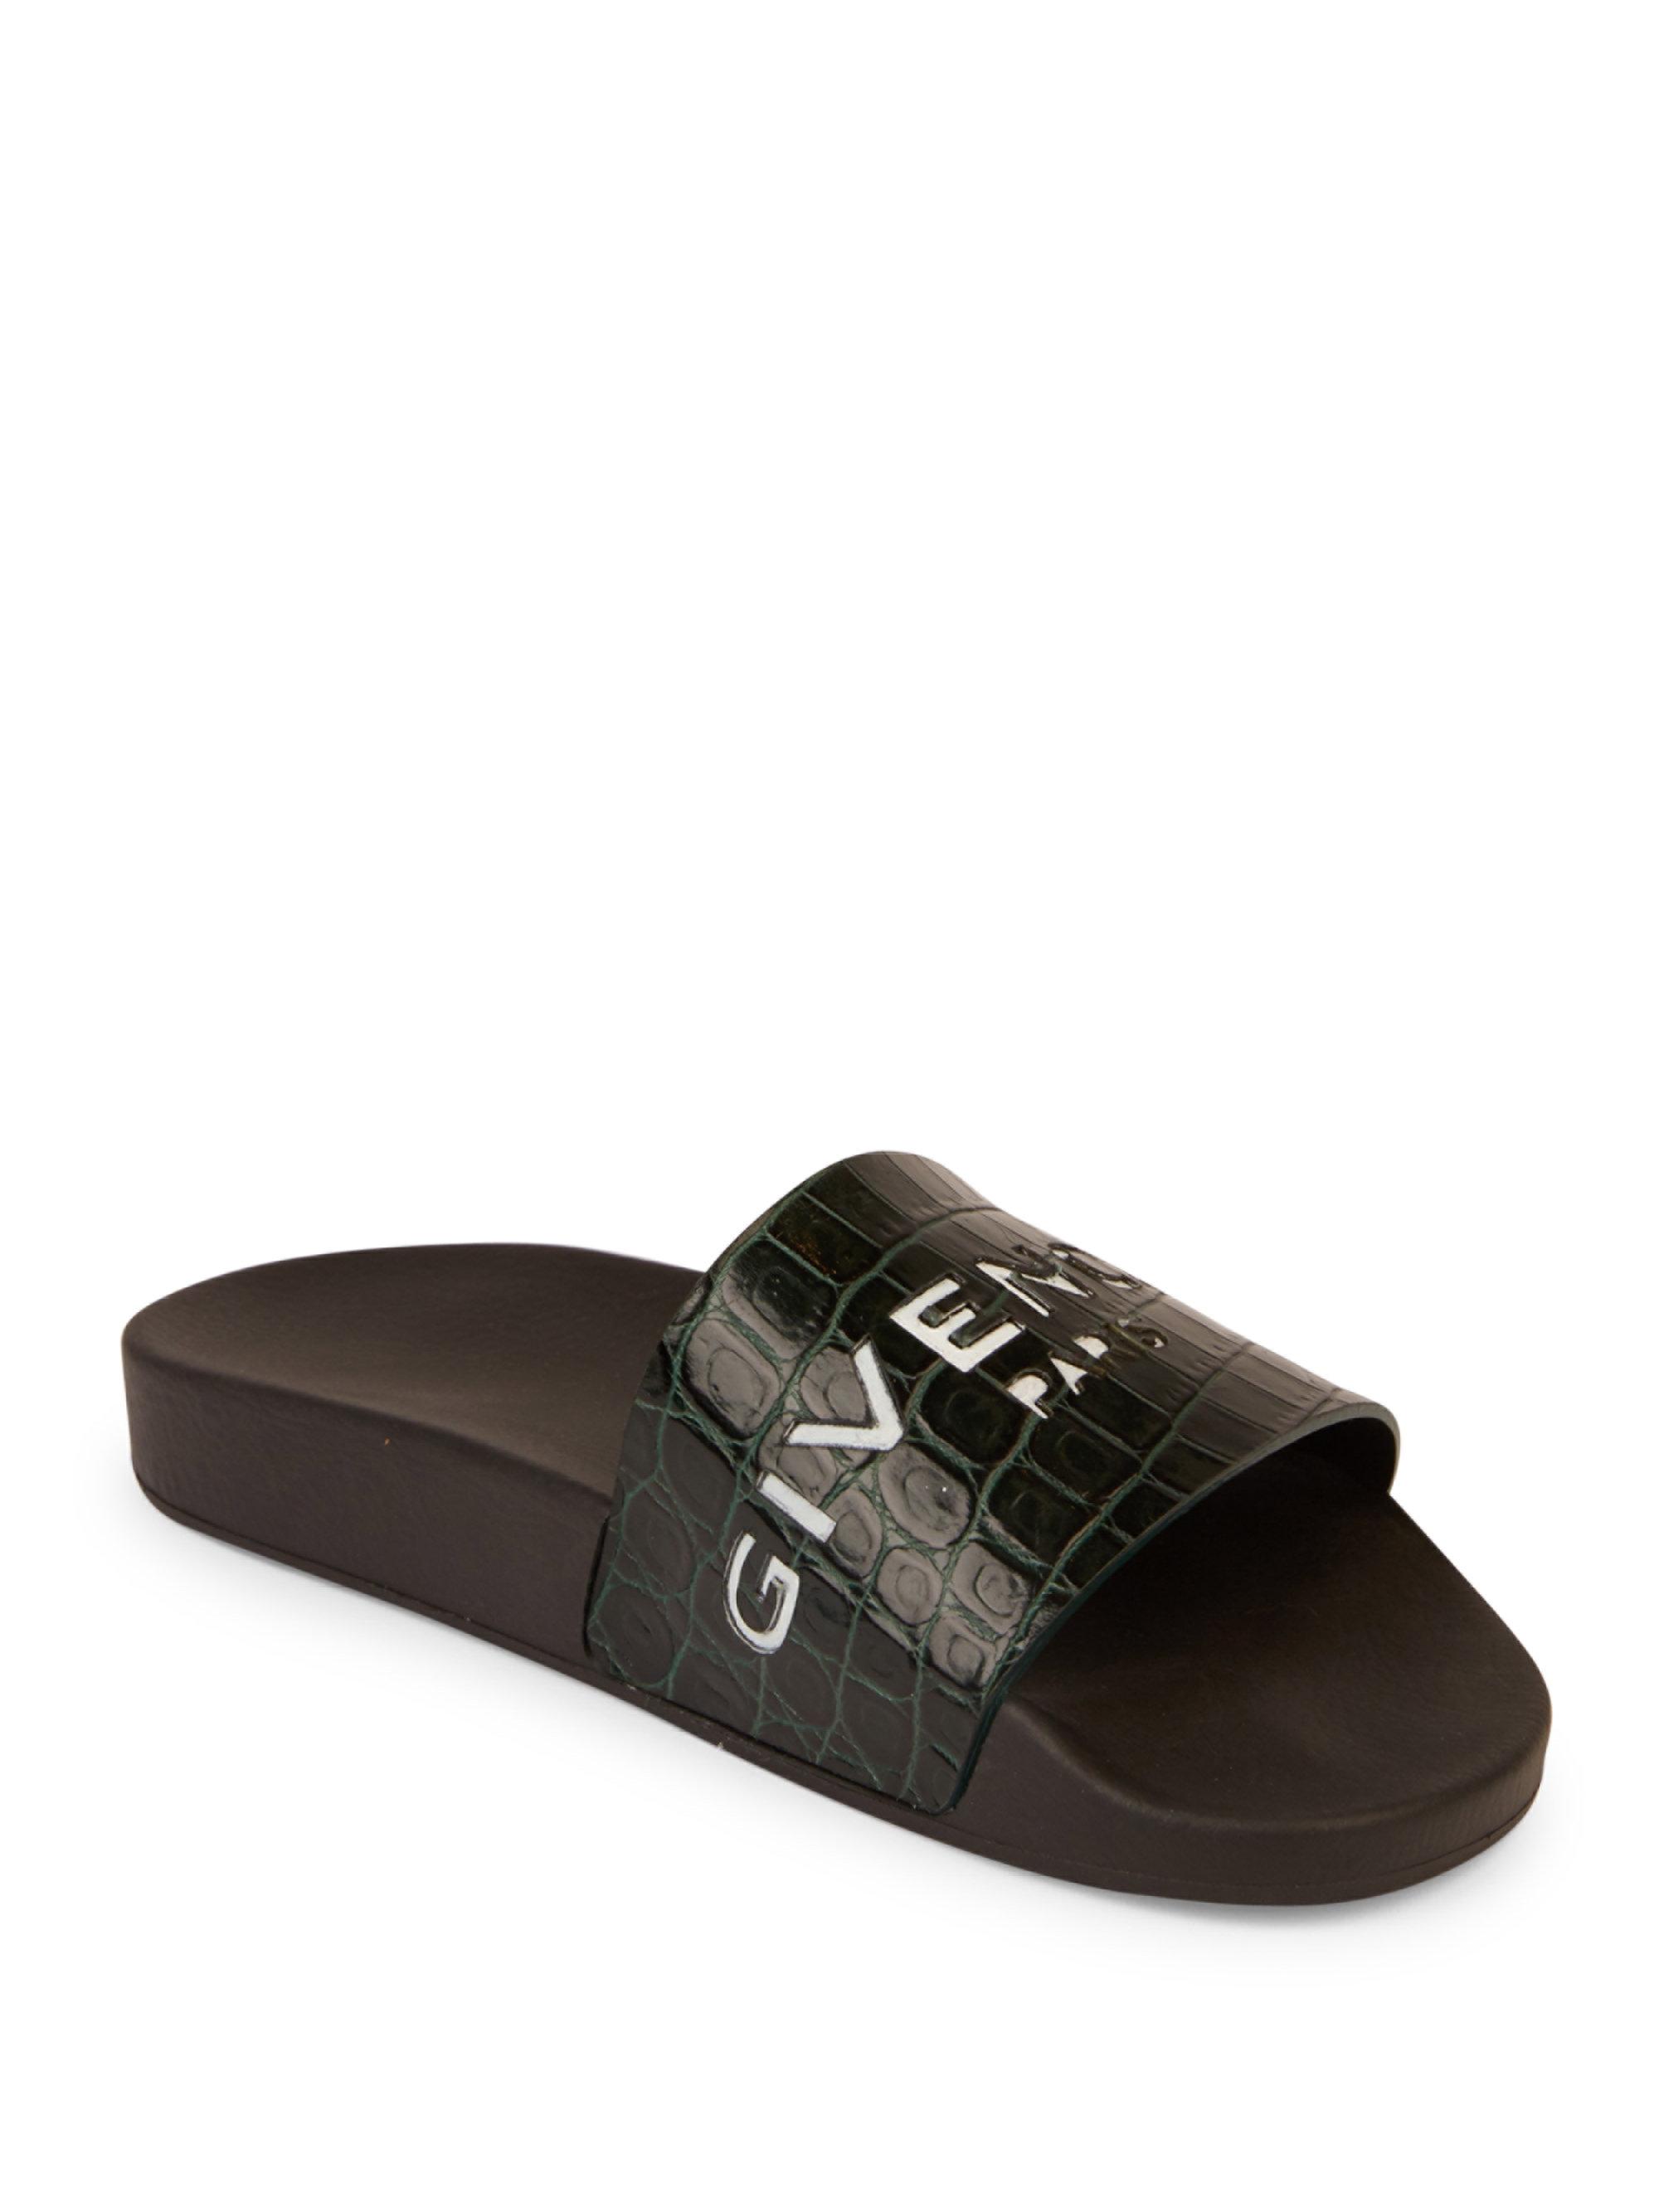 Givenchy Logo Croc-embossed Leather Slides for Men | Lyst